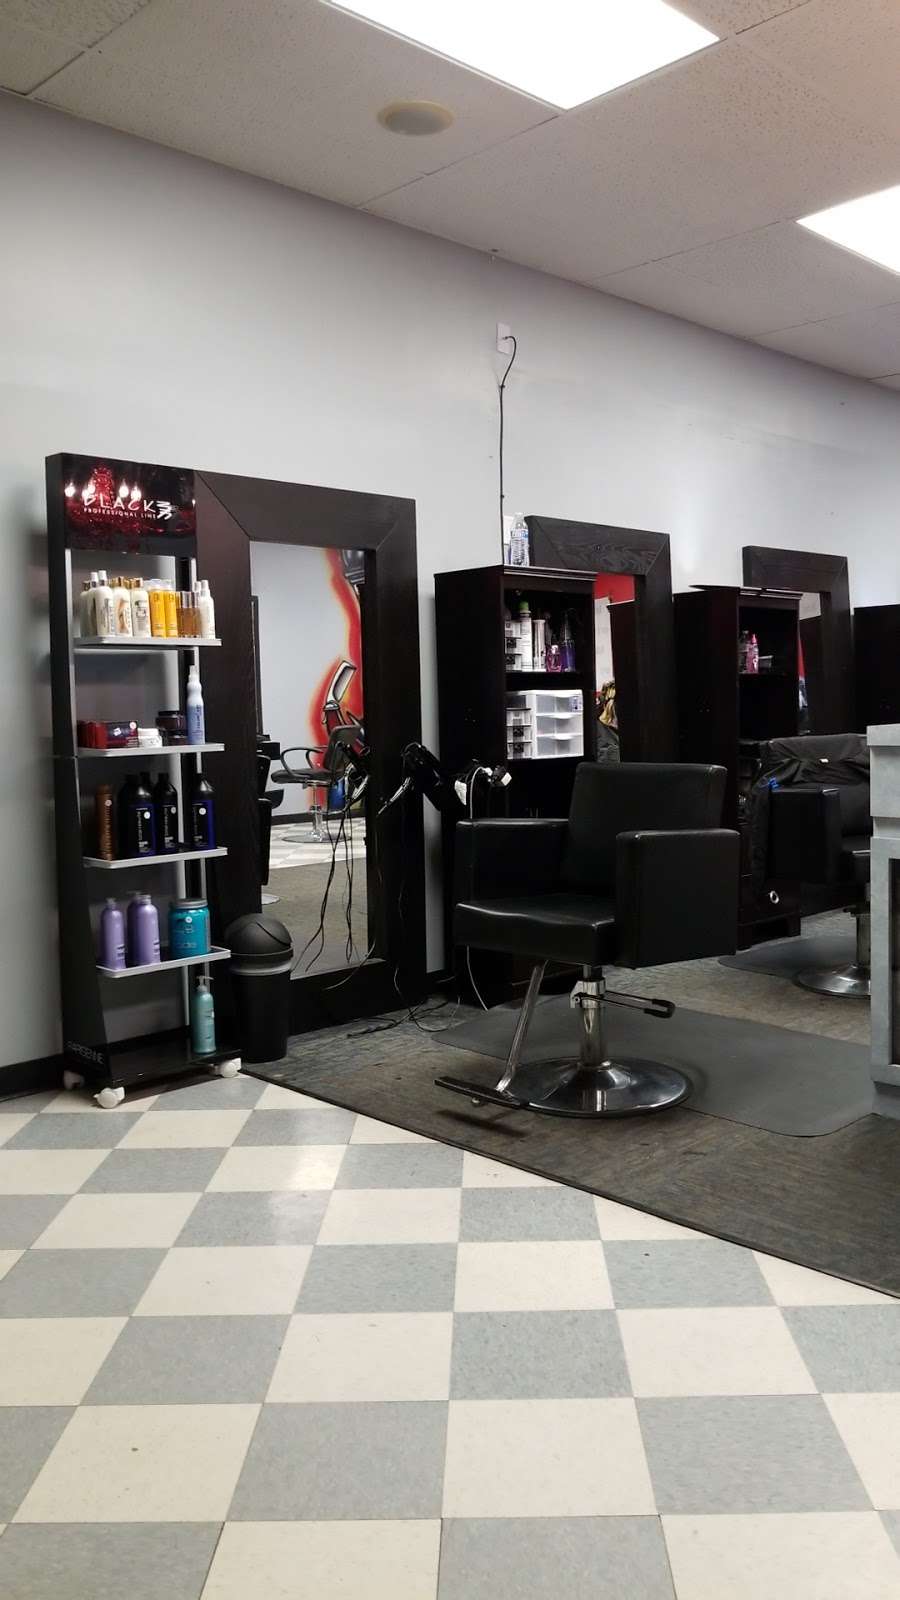 Rubens Hair Studio - Barberos y Estilistas | 3133 Peoria St unit 205, Aurora, CO 80010 | Phone: (720) 638-0764